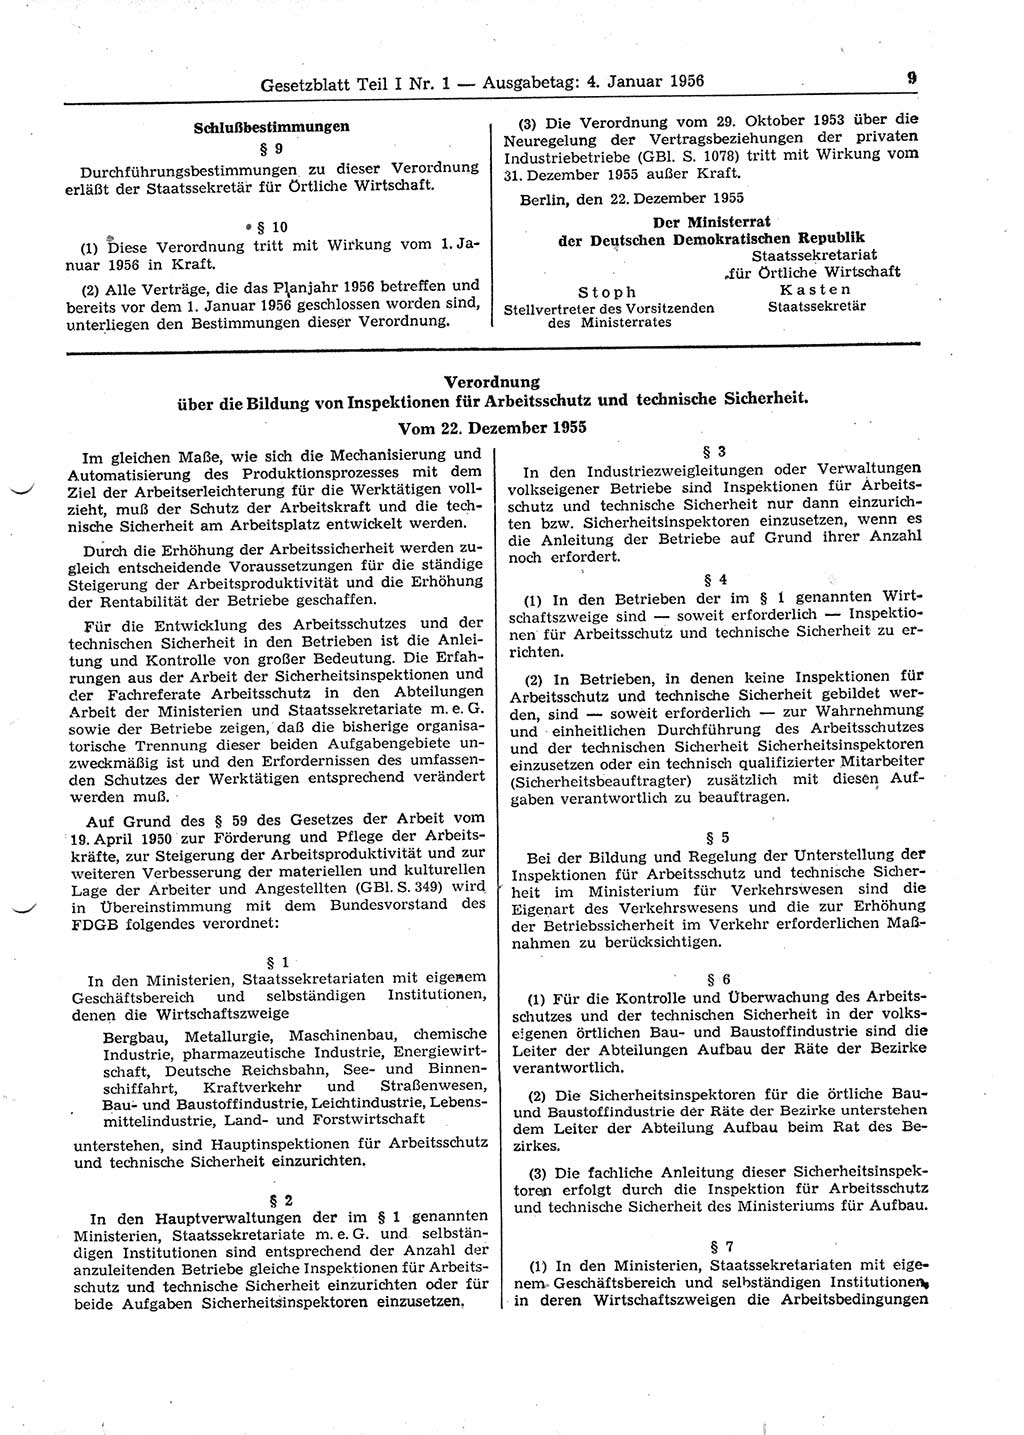 Gesetzblatt (GBl.) der Deutschen Demokratischen Republik (DDR) Teil Ⅰ 1956, Seite 9 (GBl. DDR Ⅰ 1956, S. 9)